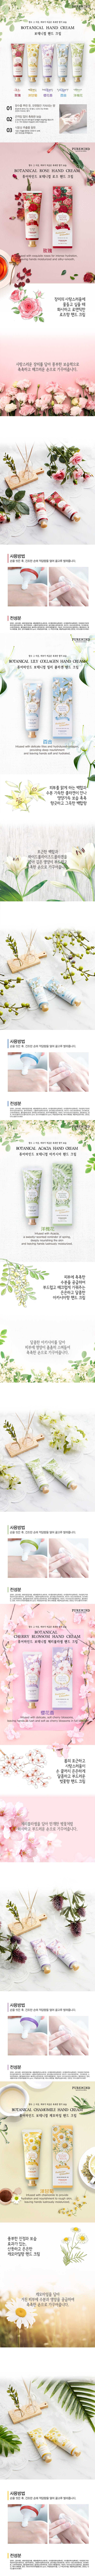 韓國 香氛 護手霜 手部保養 韓國 護手霜